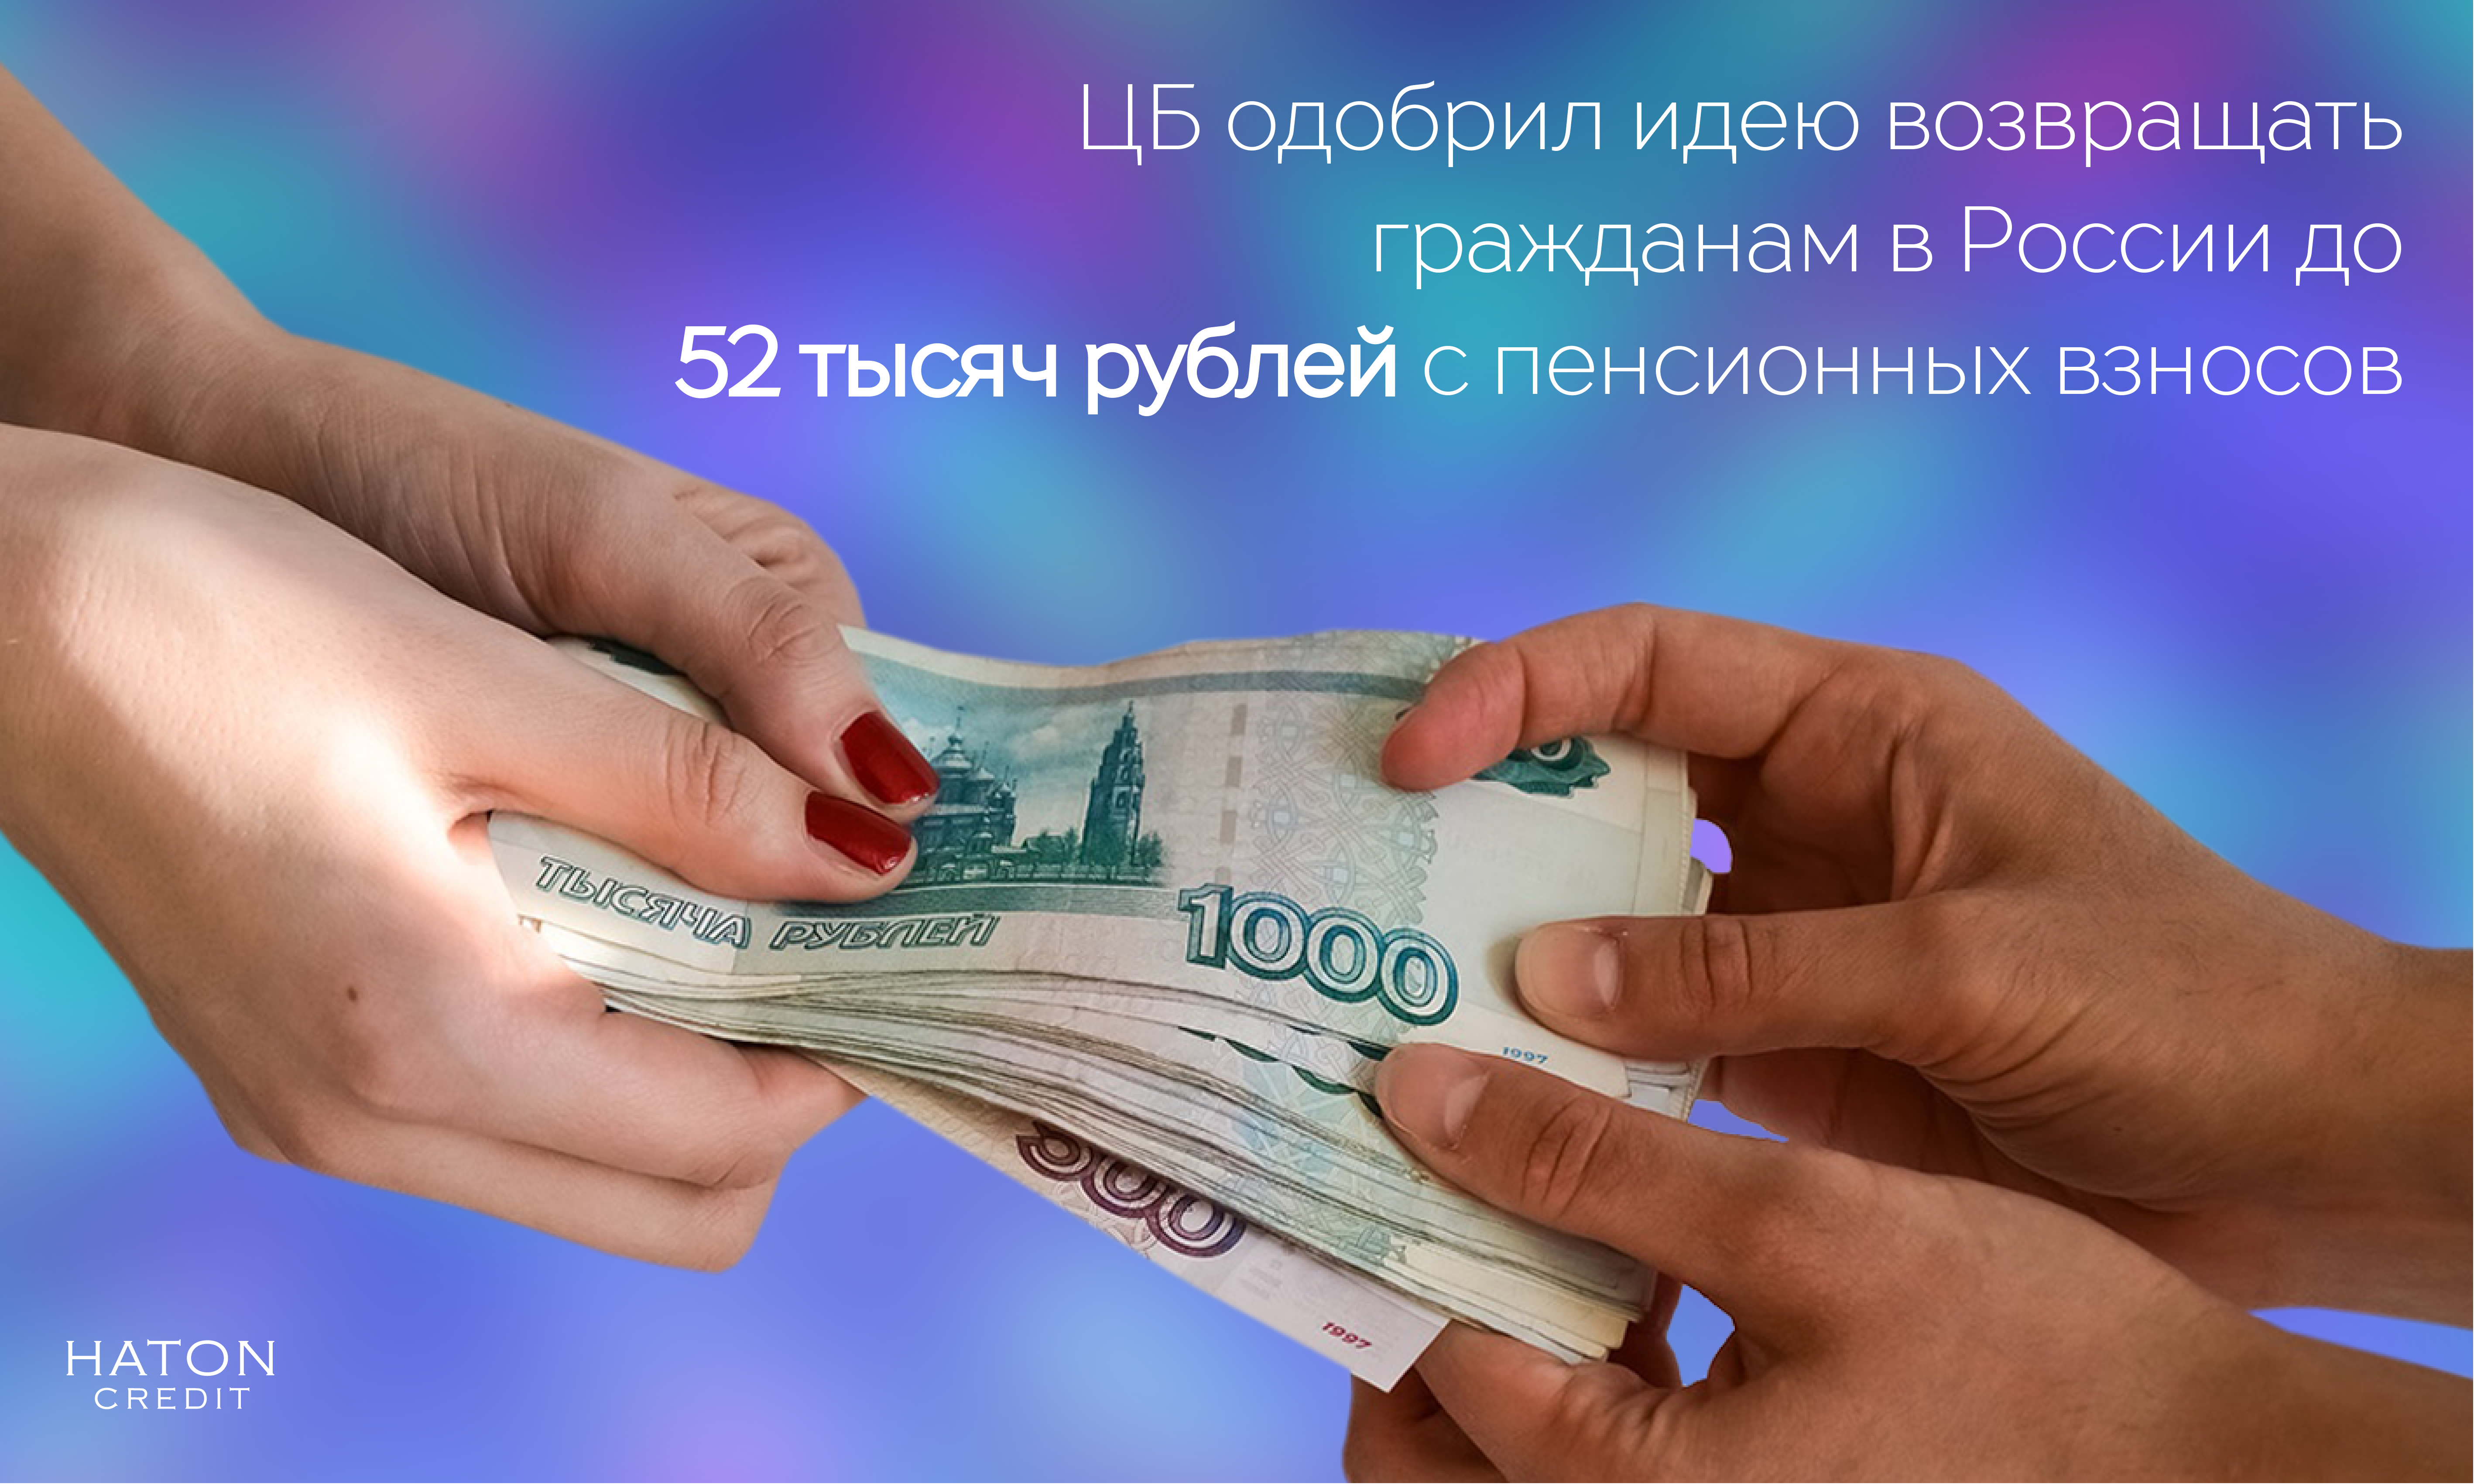 ЦБ одобрил идею возвращать гражданам в России до 52 тысяч рублей с пенсионных взносов 